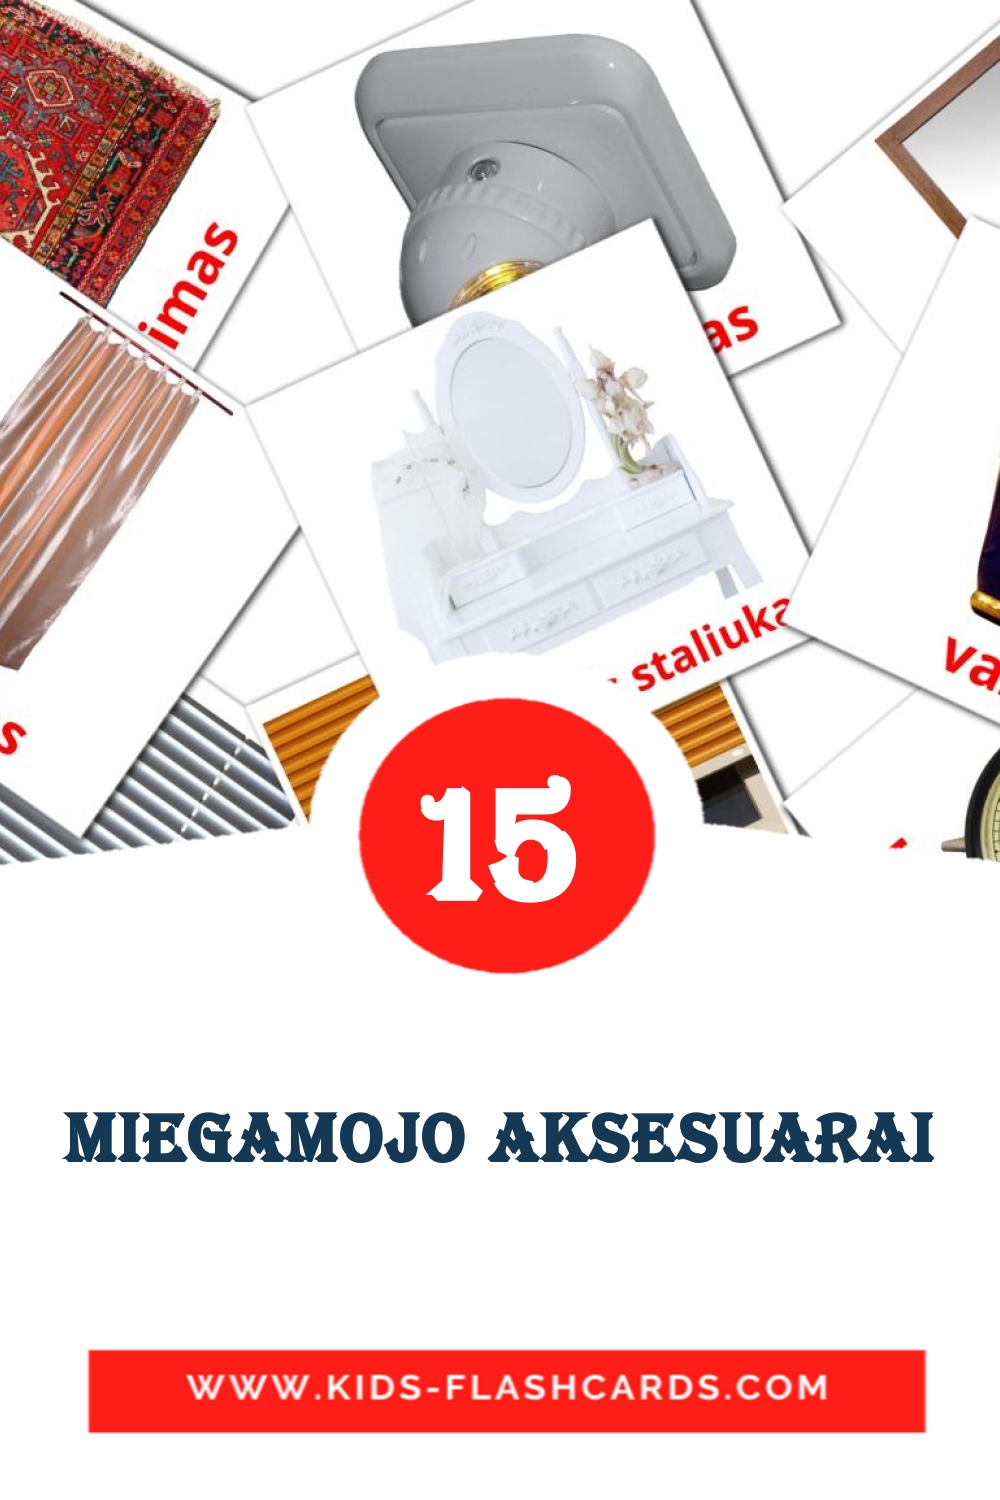 15 Miegamojo aksesuarai fotokaarten voor kleuters in het litouws